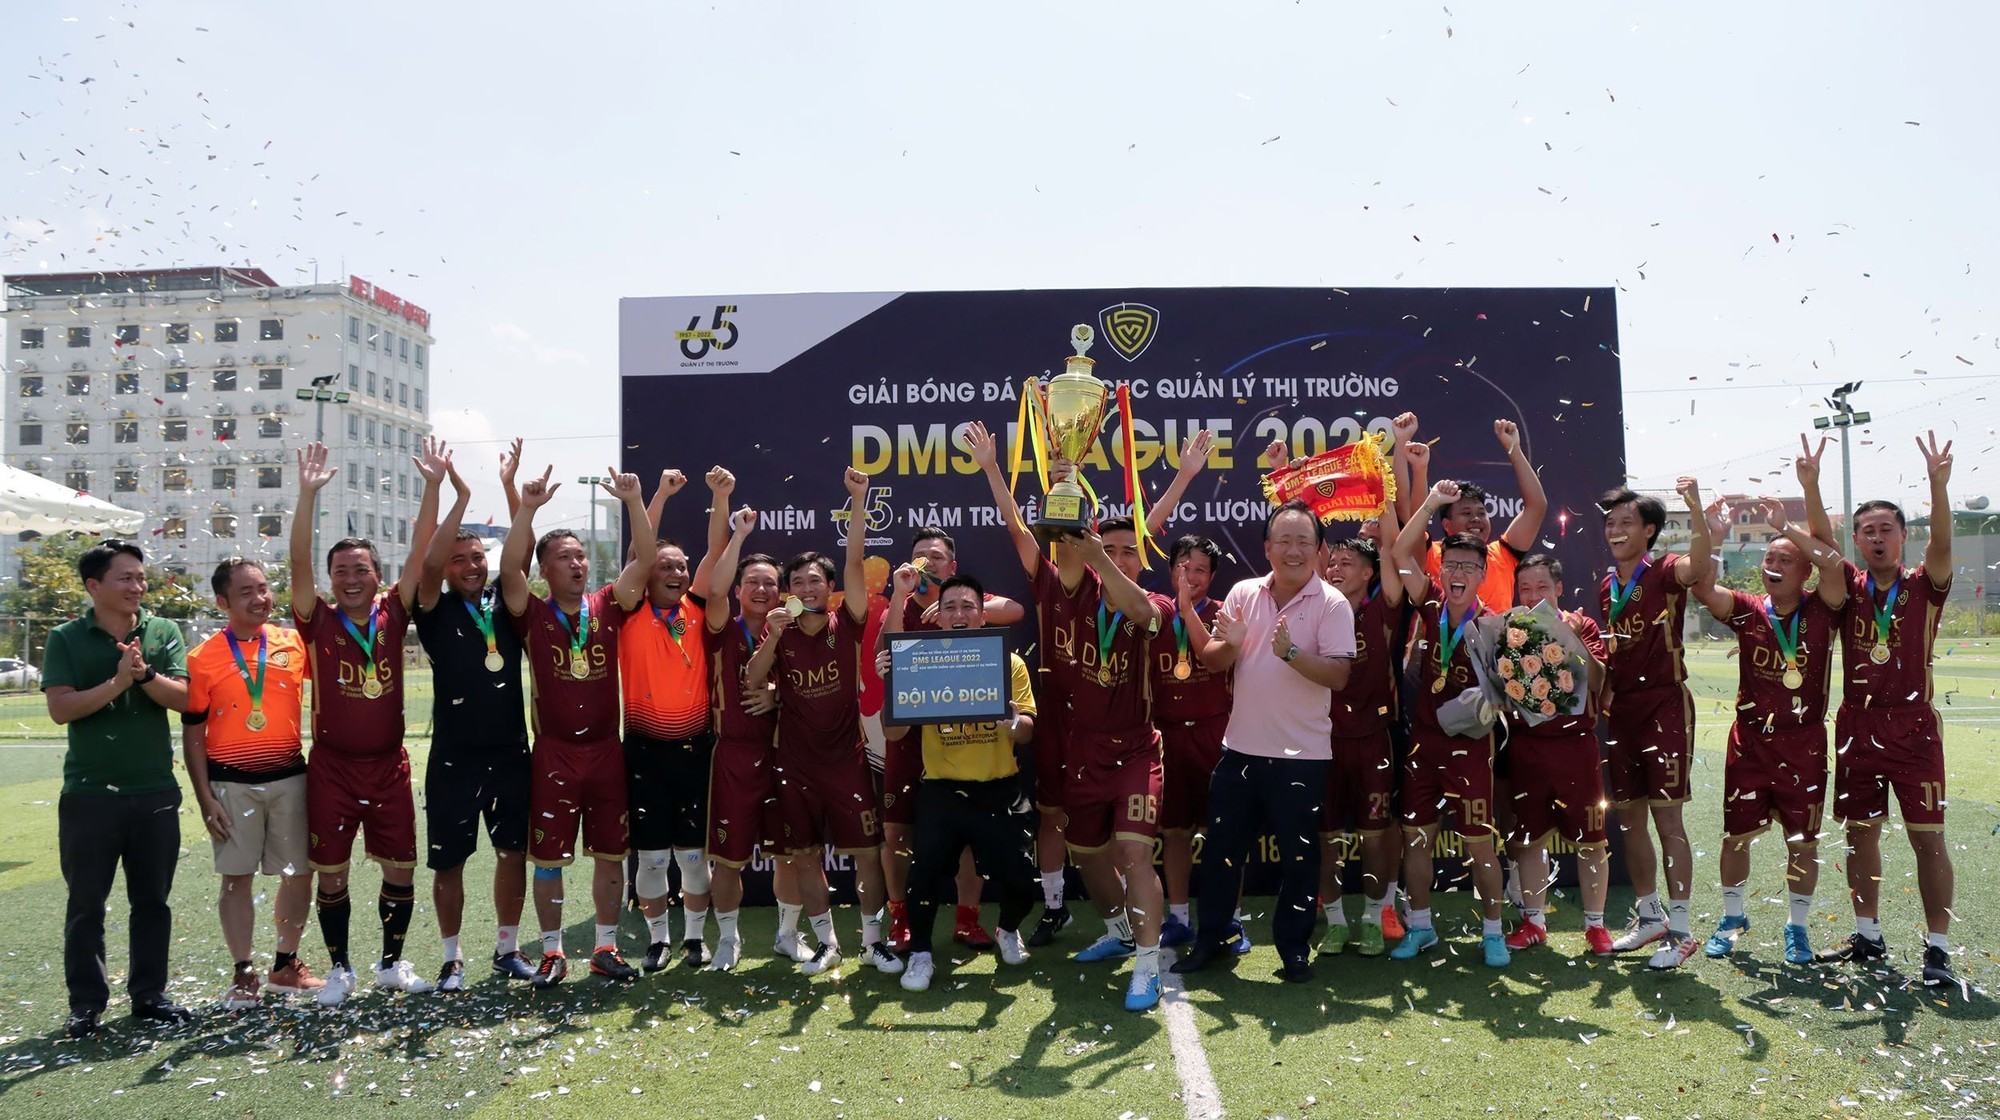 Quản lý thị trường sẽ đá giao hữu với Đội bóng các tuyển thủ Quốc gia Việt Nam - Ảnh 3.